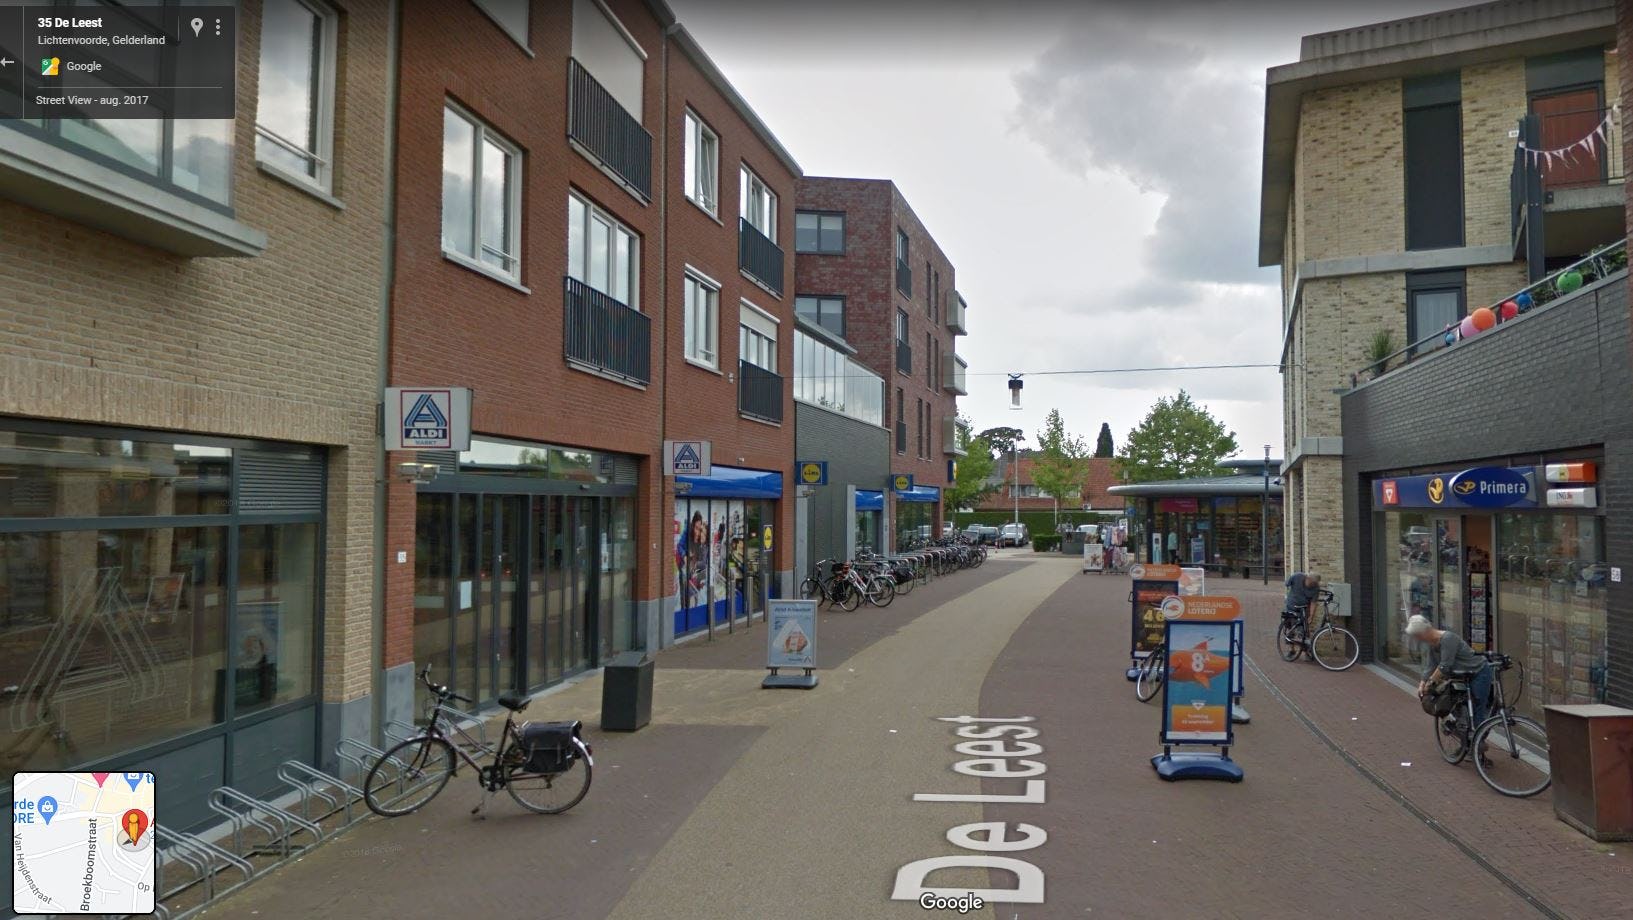 De huidige locatie van Aldi naast een filiaal van Lidl. Foto: Google Streetview.